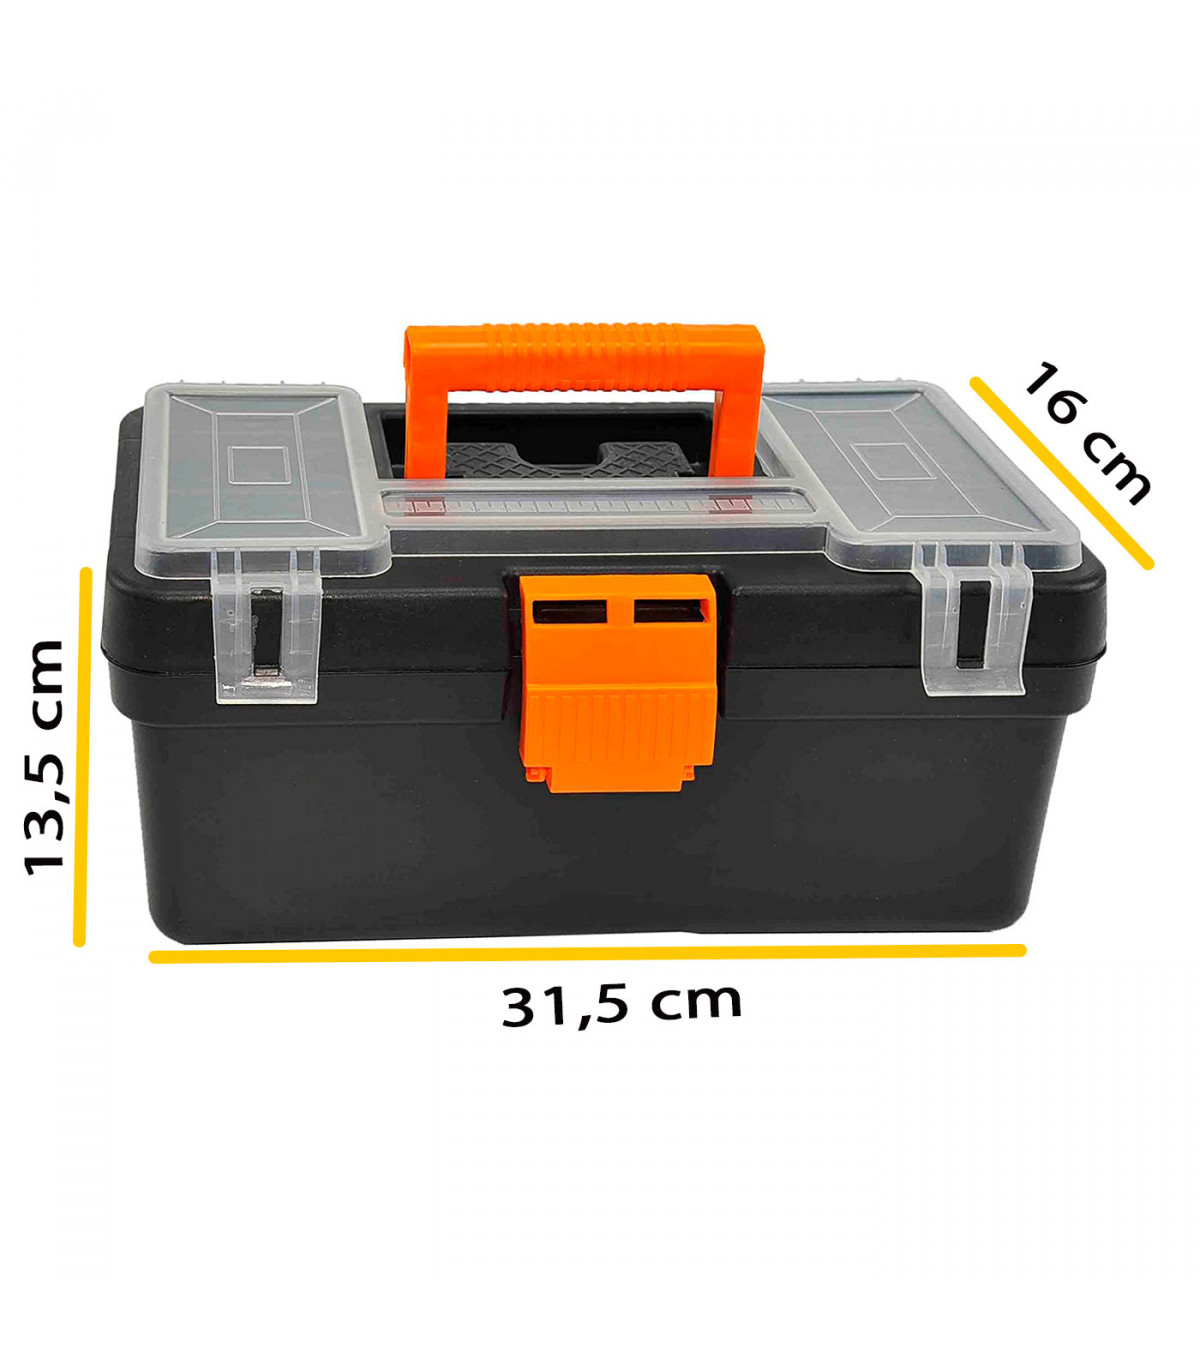 jugo Acuoso raqueta Caja de herramientas con compartimentos en la tapa y asa, modelo Mini Kid,  plástico resistente, organizador, maletín almacenaje,